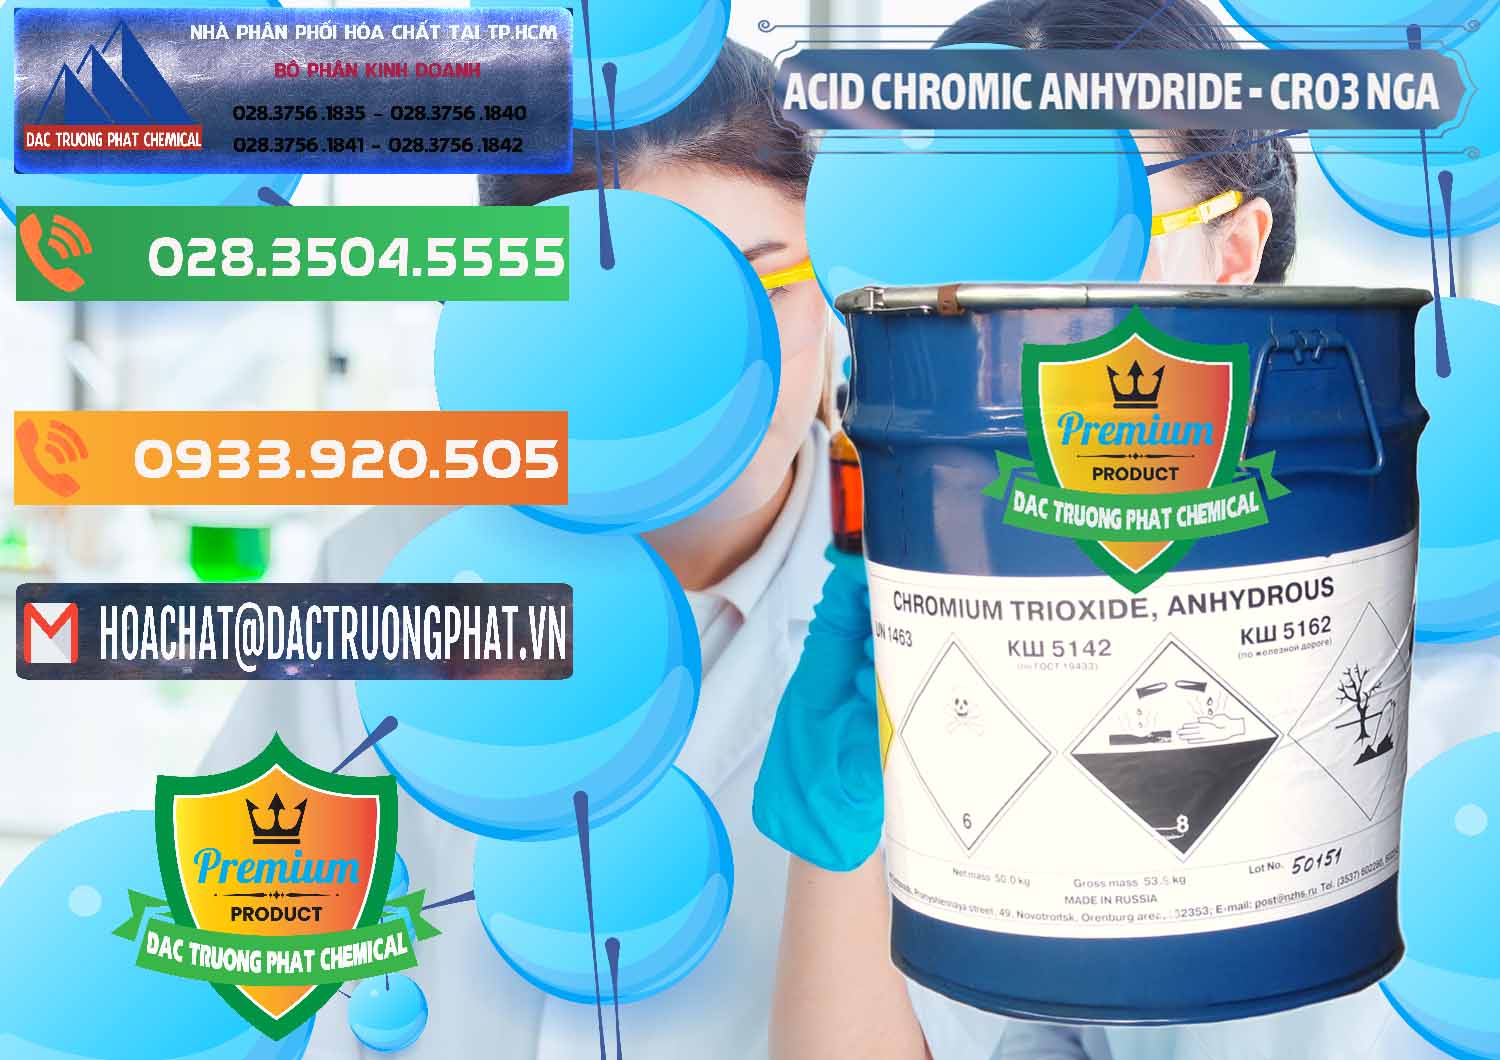 Nơi cung ứng _ bán Acid Chromic Anhydride - Cromic CRO3 Nga Russia - 0006 - Nơi chuyên phân phối & kinh doanh hóa chất tại TP.HCM - hoachatxulynuoc.com.vn